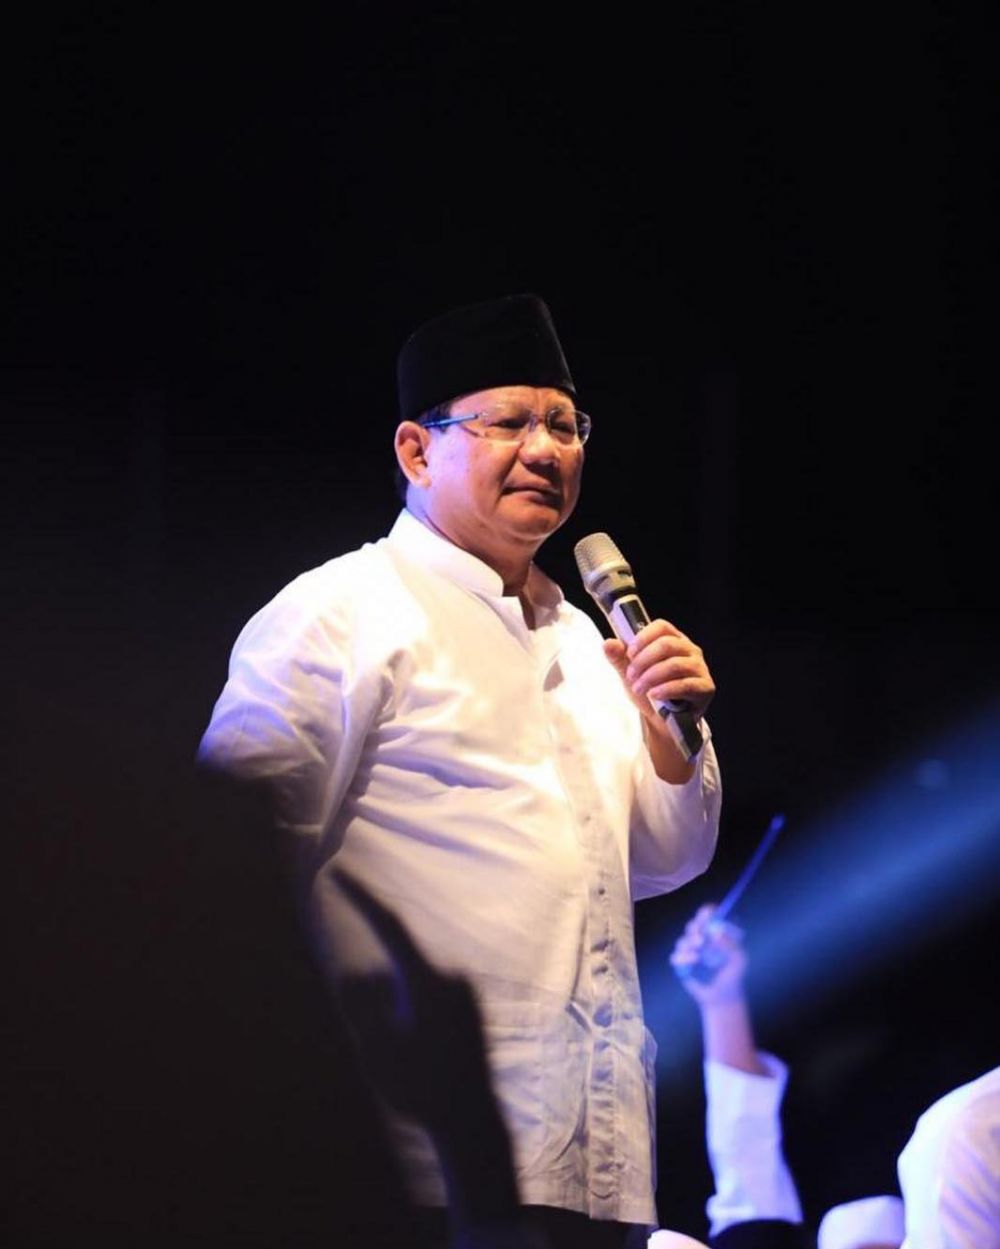 Ini alasan Prabowo sebut Indonesia bisa bubar dan punah